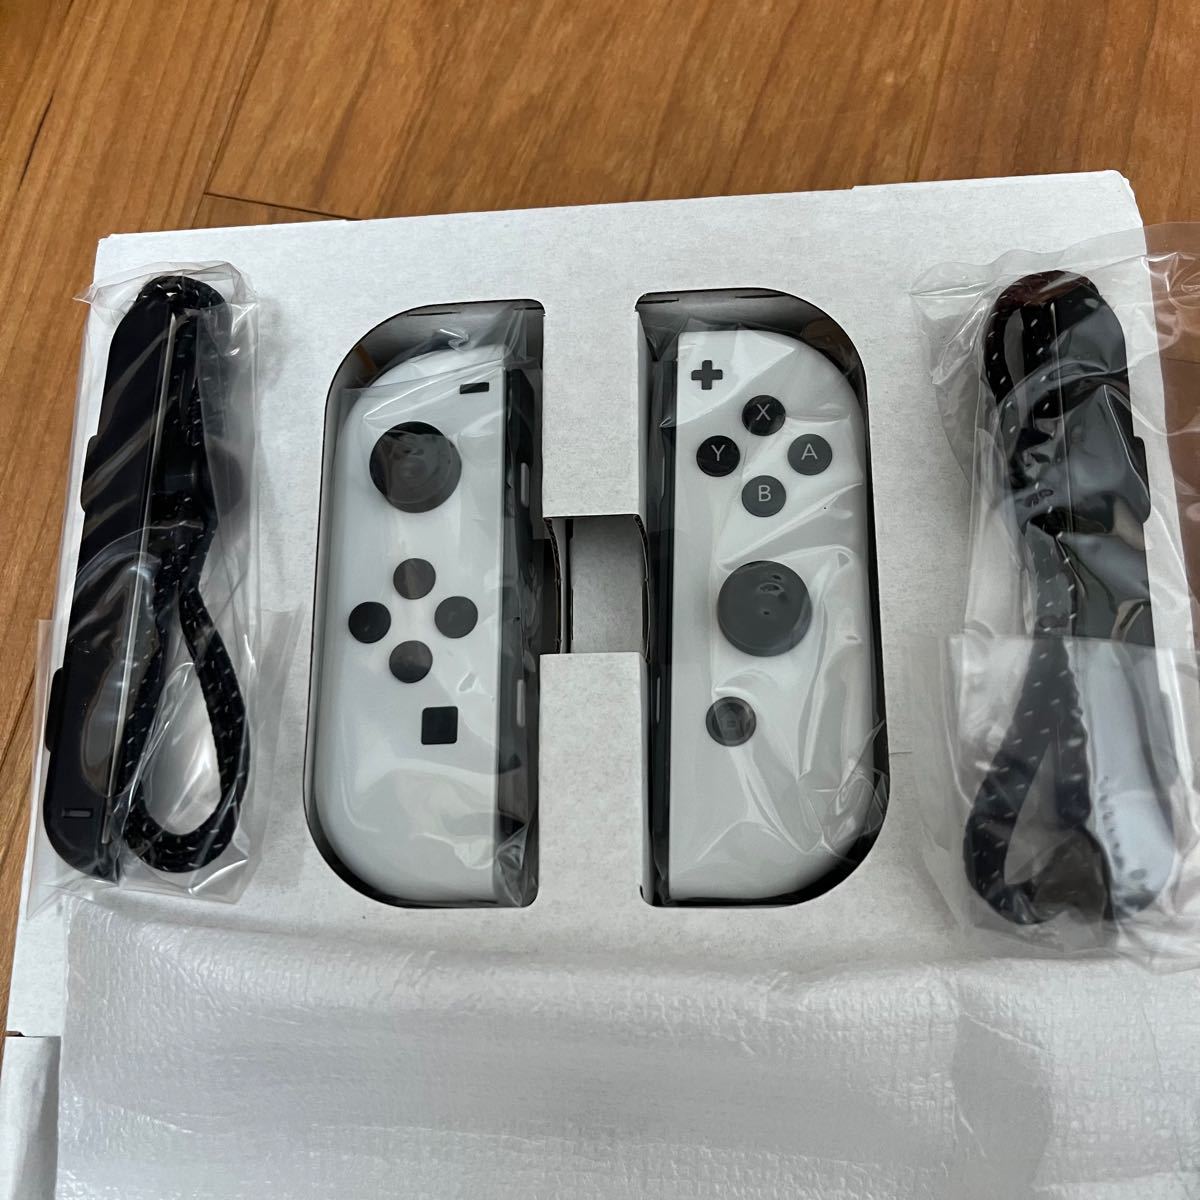 新品 Nintendo Switch Joy-Con LRセット ホワイト(白)ストラップ付